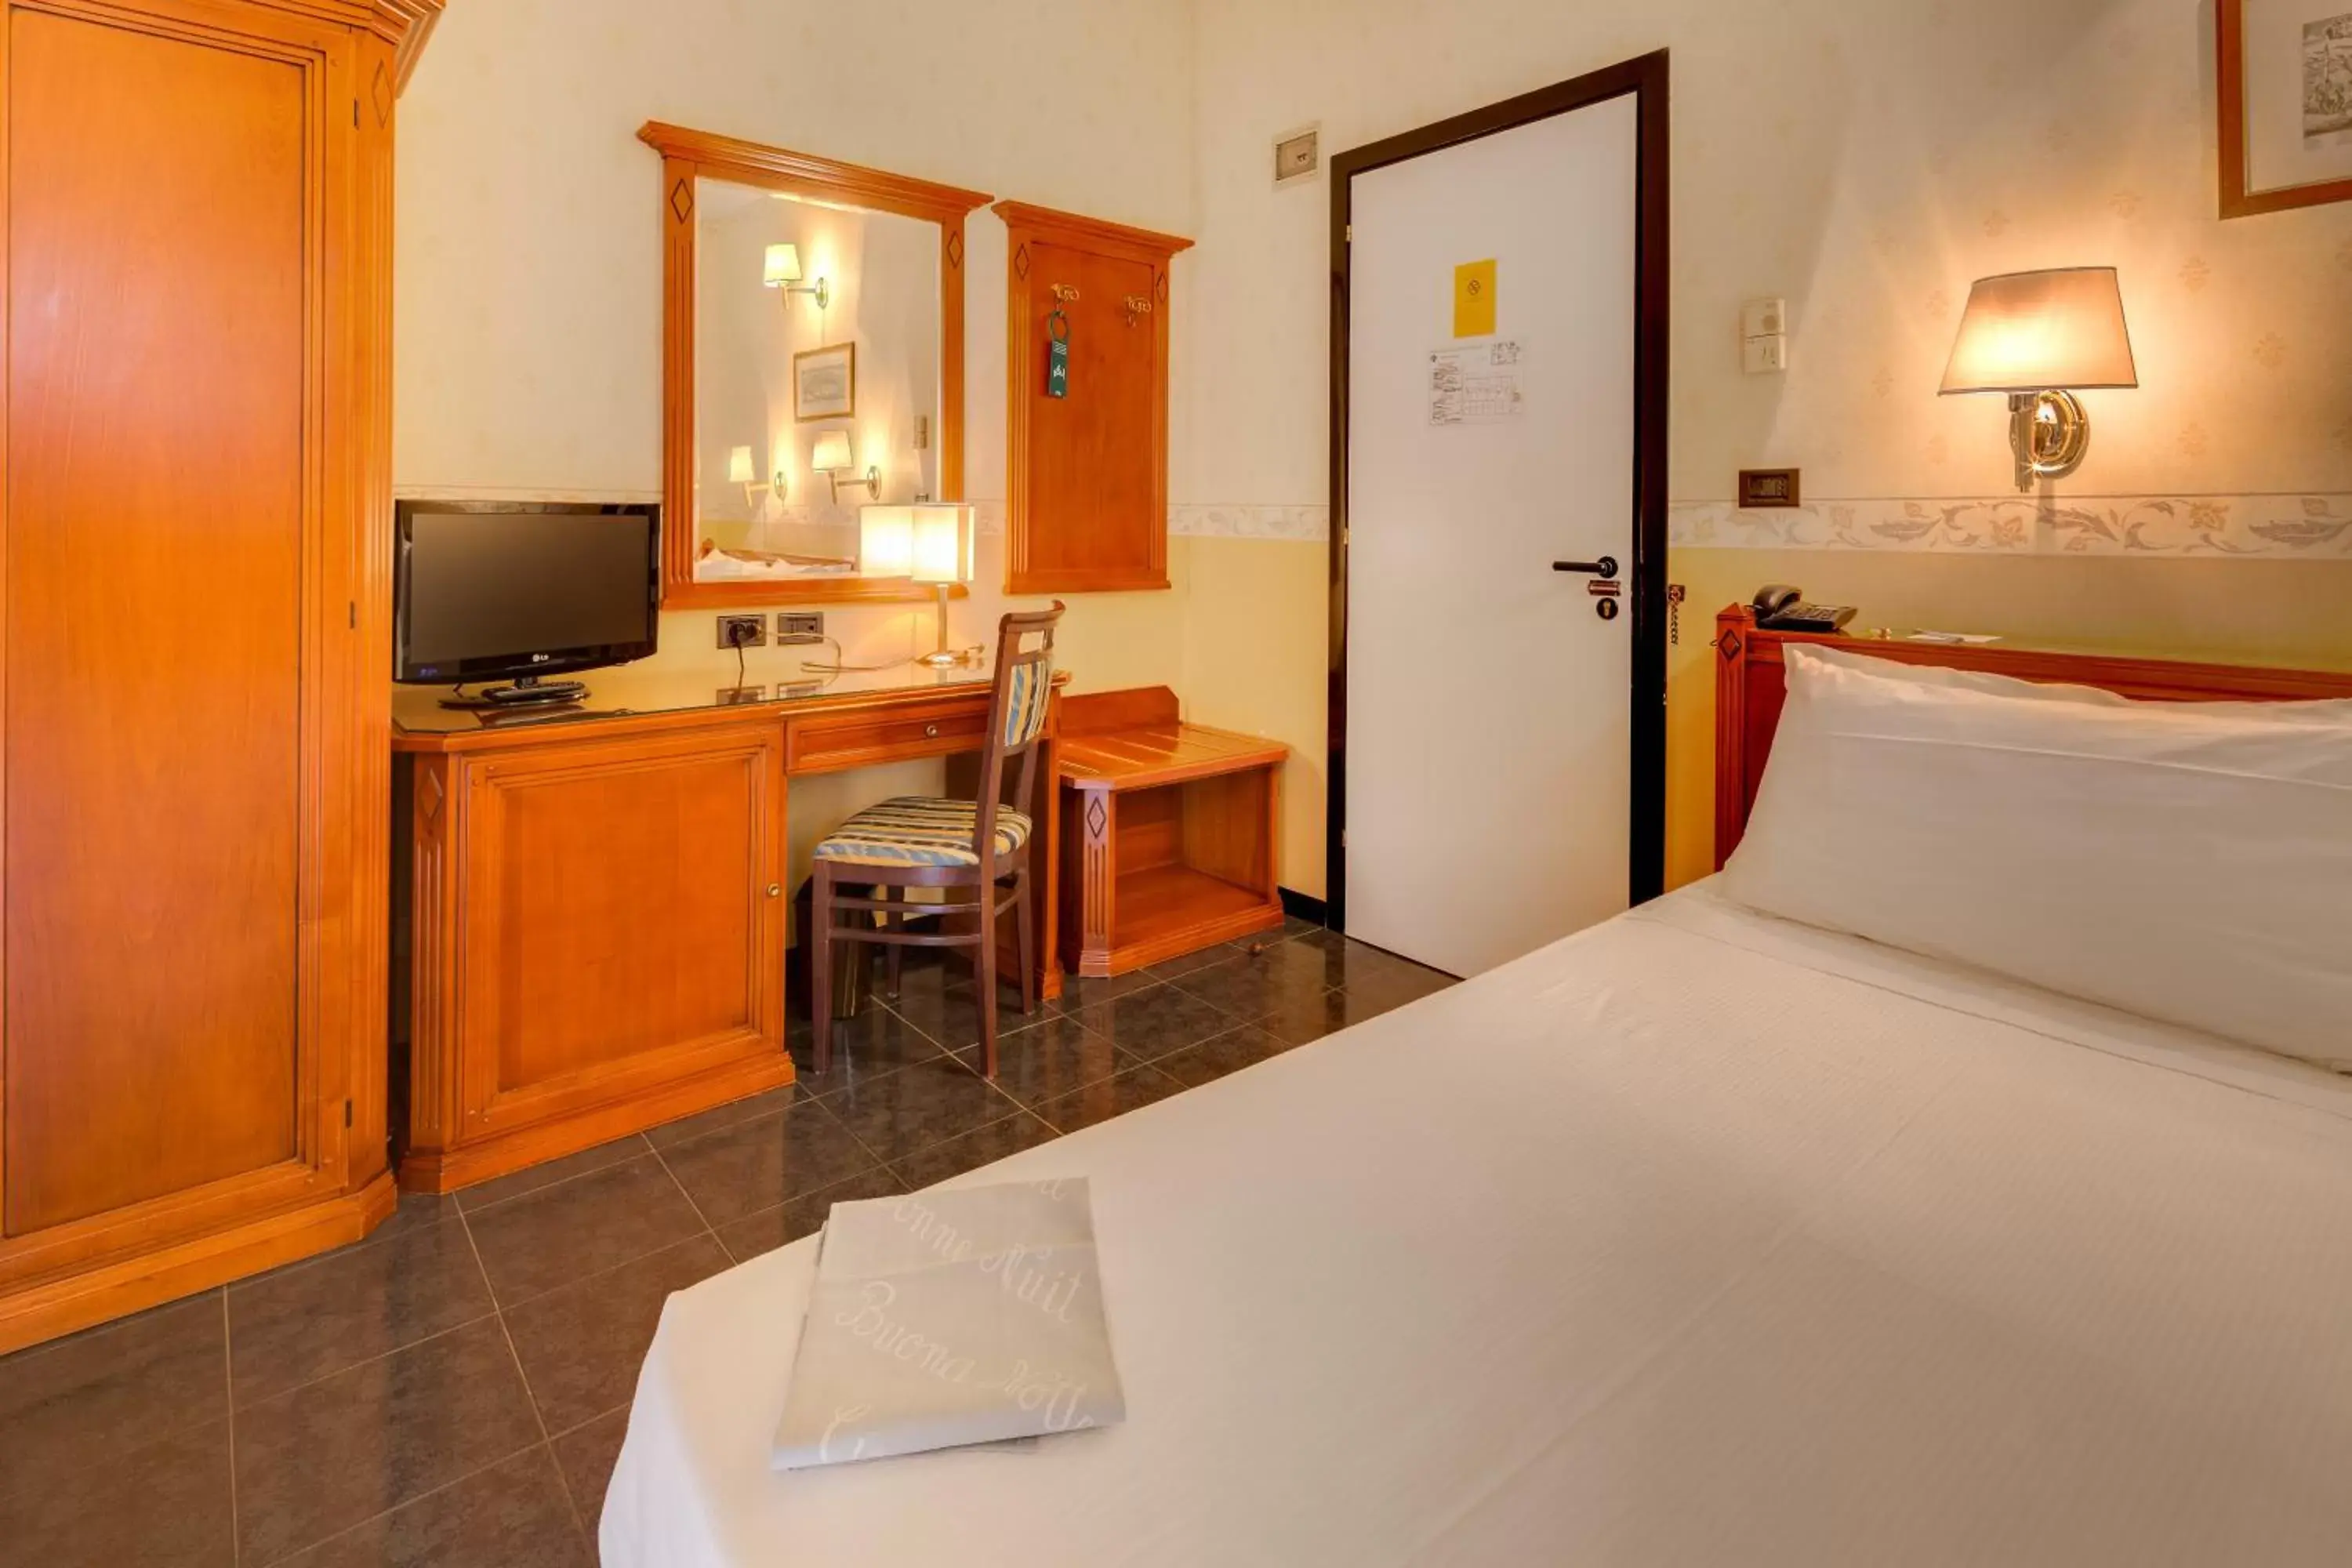 Photo of the whole room, Bed in Hotel San Donato - Bologna centro